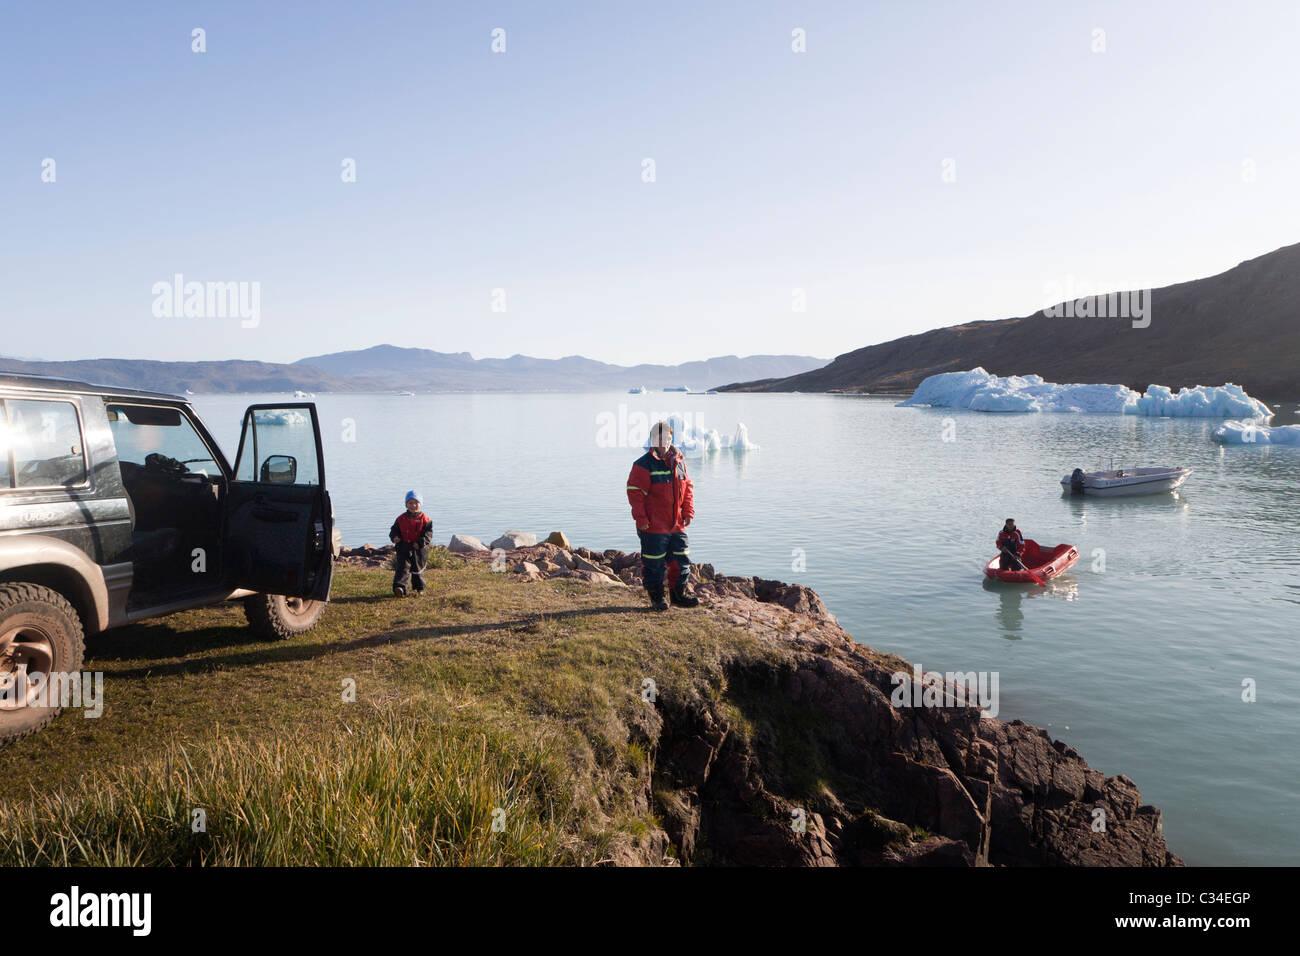 Las personas preparándose para un viaje en barco. Granja Inneruulalik, sur de Groenlandia Foto de stock